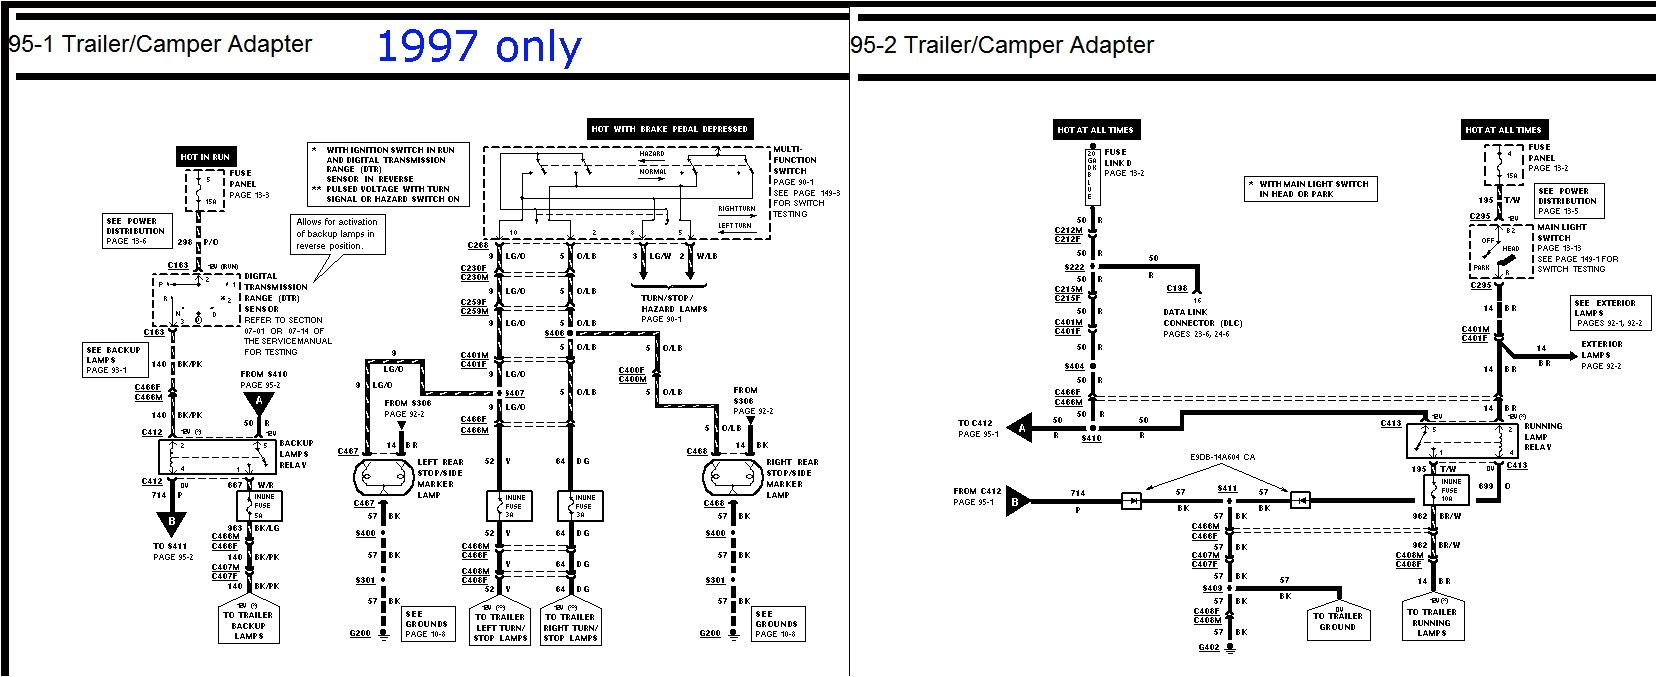 97 f150 wiring diagram wiring diagram schematic 97 f150 wiring diagram overdrive 97 f150 overdrive wiring diagram